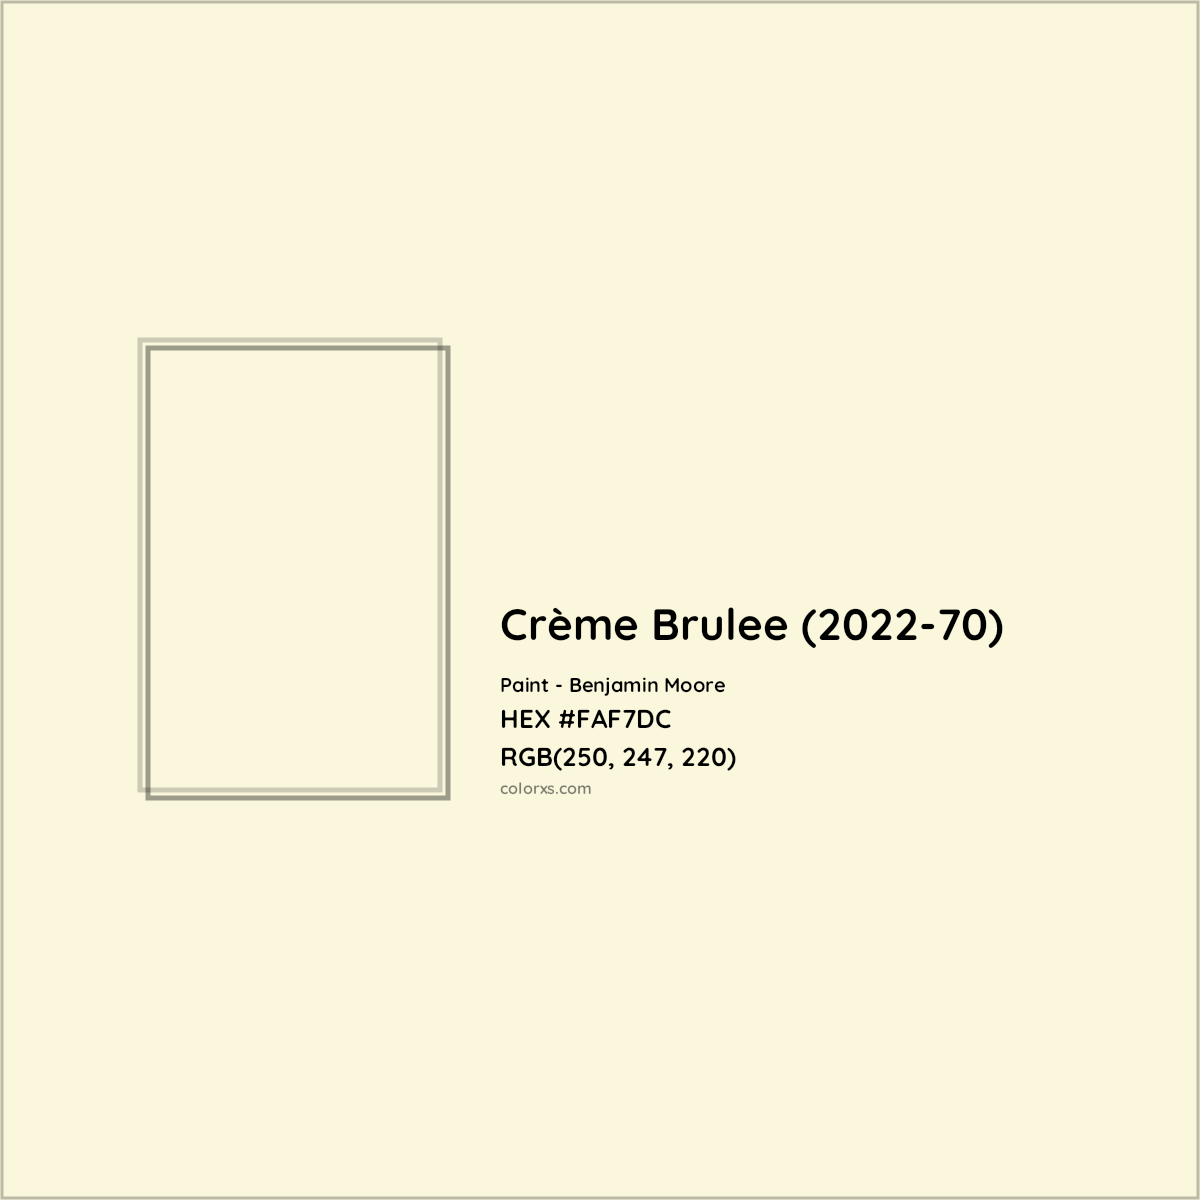 HEX #FAF7DC Crème Brulee (2022-70) Paint Benjamin Moore - Color Code